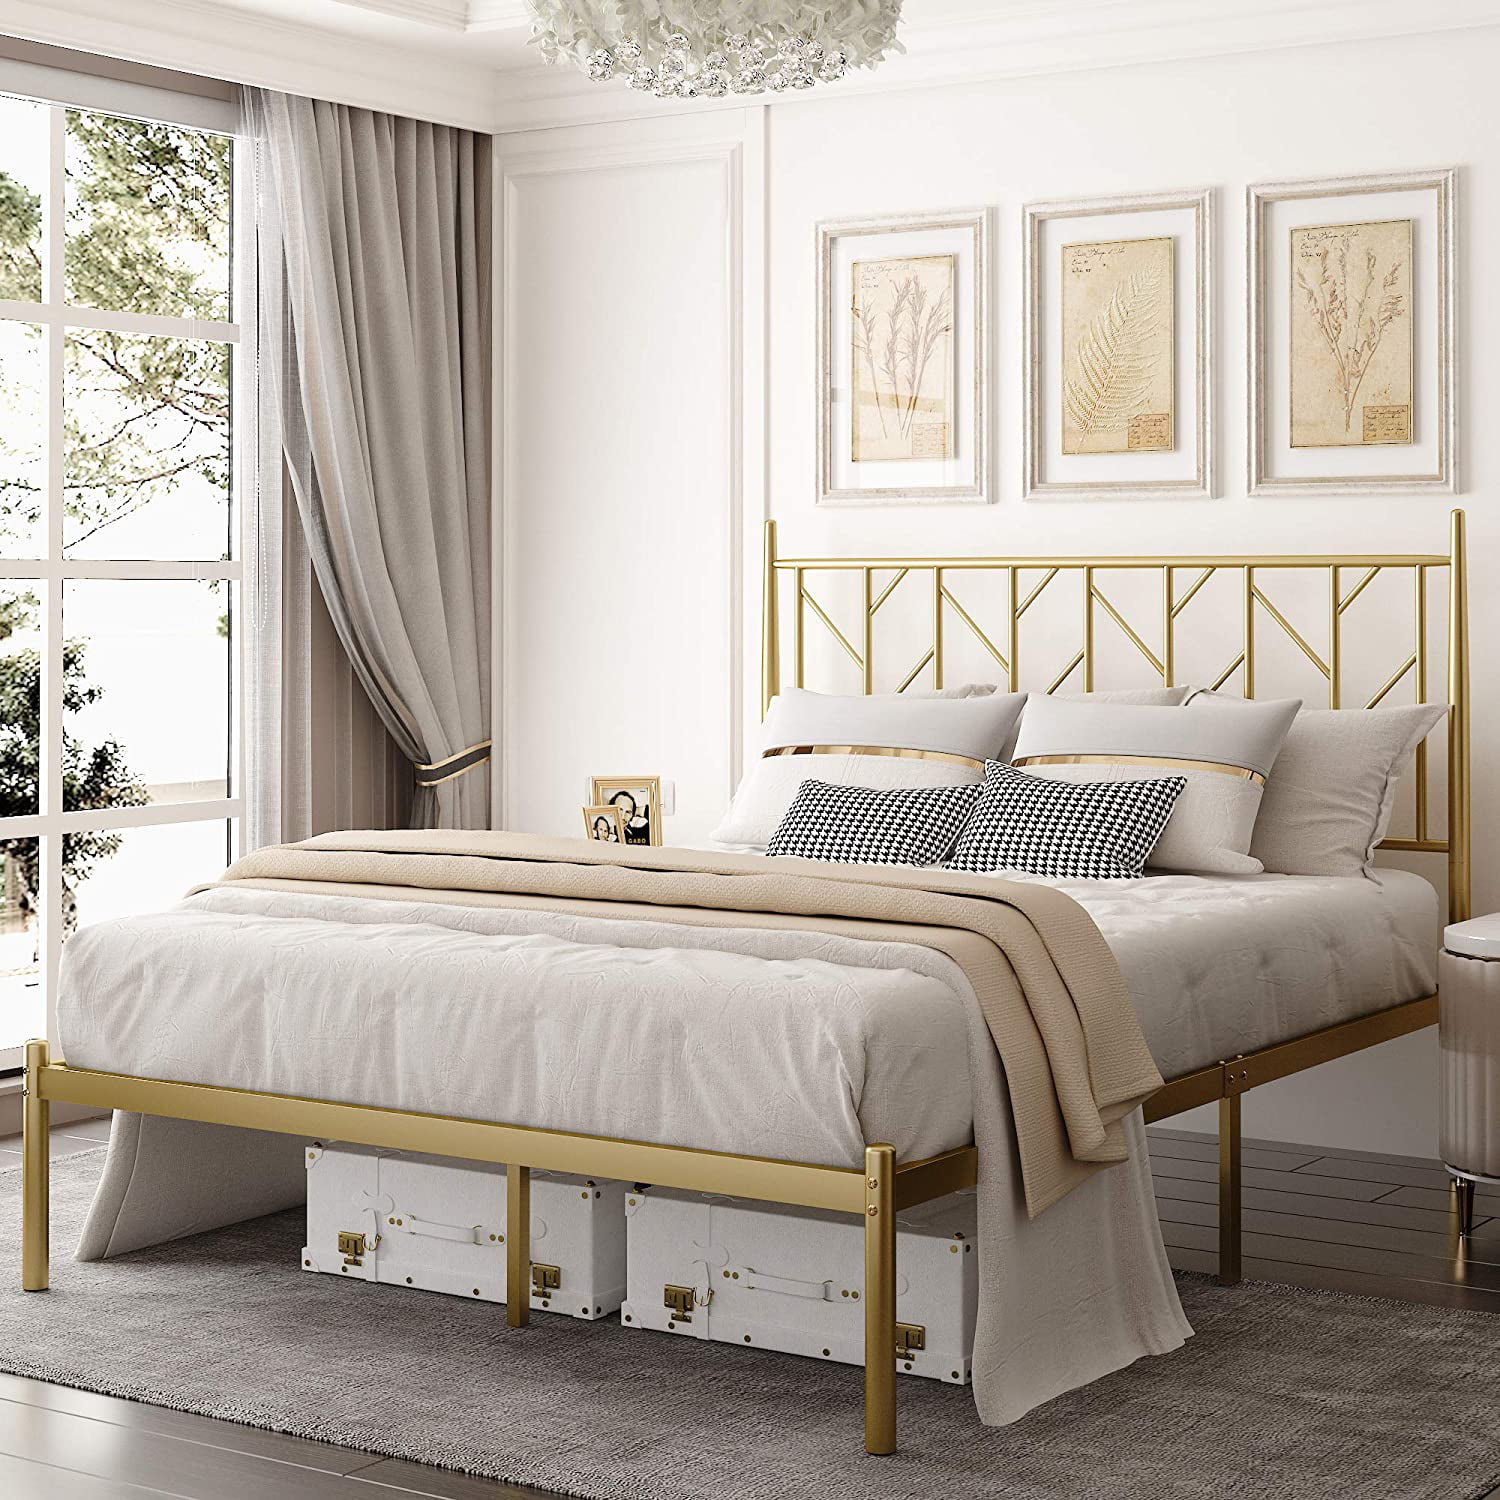 Amolife Queen Size Modern Metal Platform Bed Frame, Vintage Style, Gold